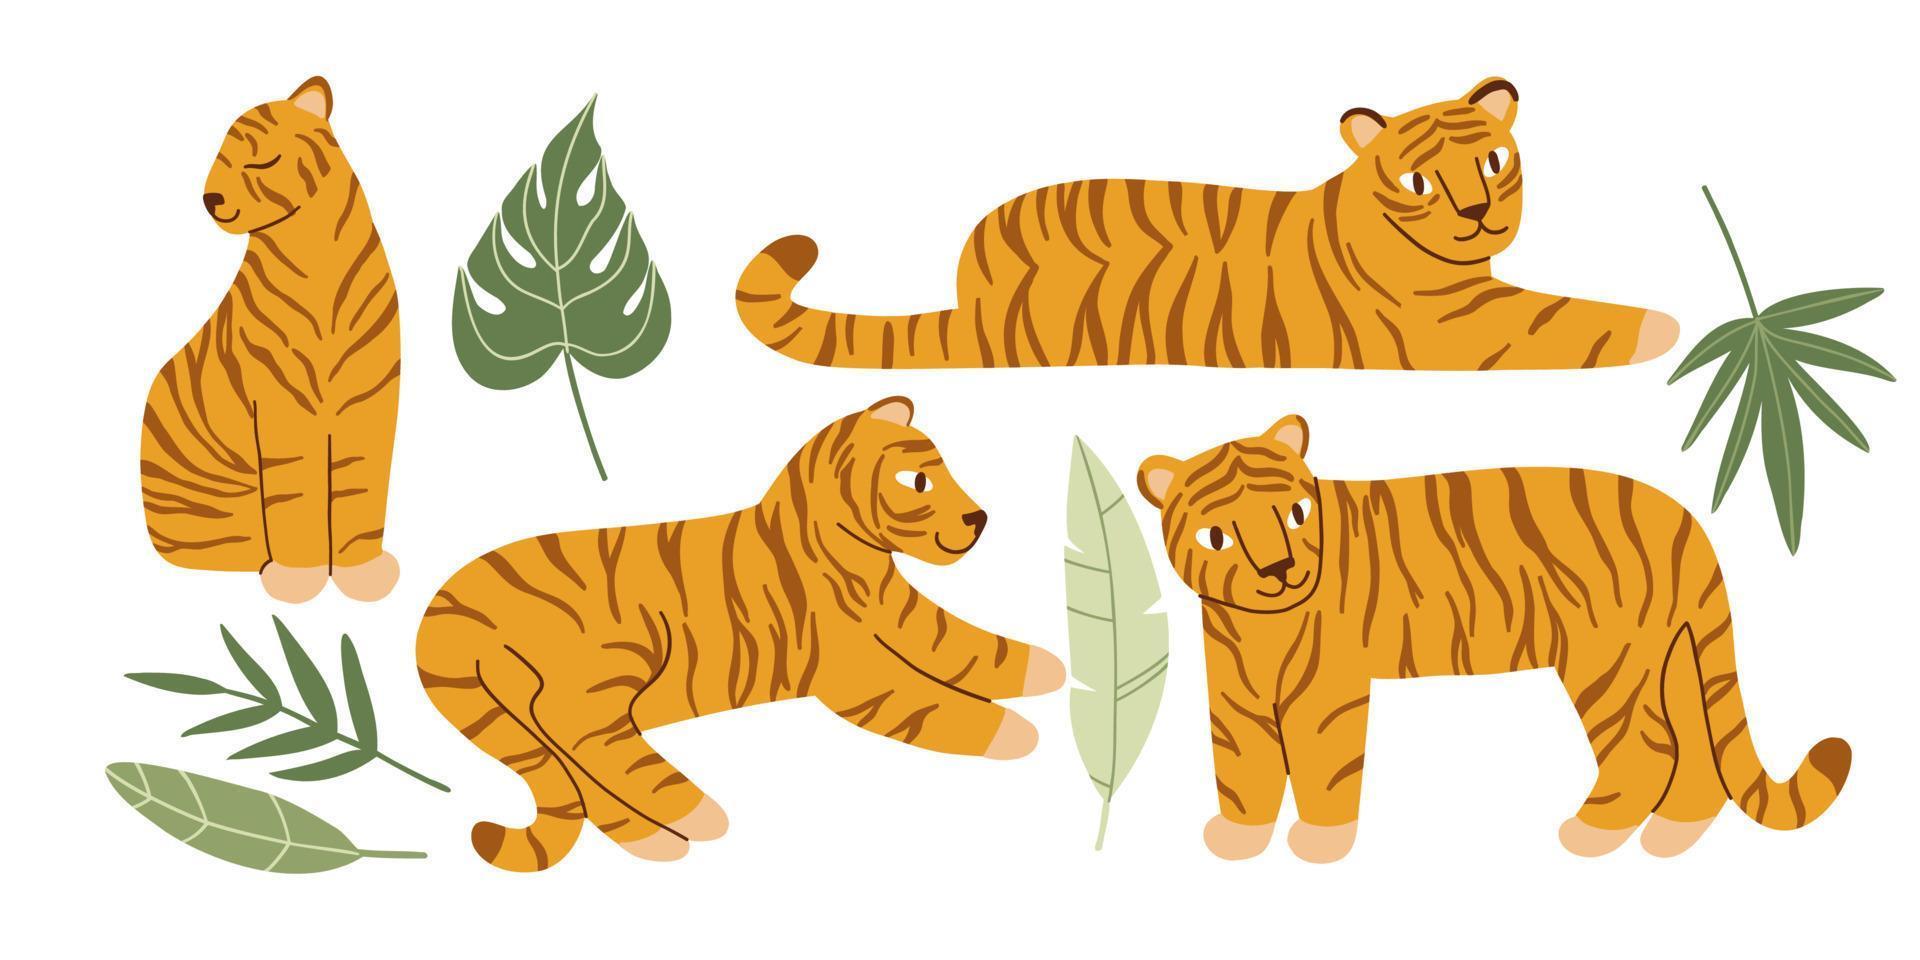 ambientado con tigres y hojas de colores planos. ilustración vectorial dibujada a mano. vector